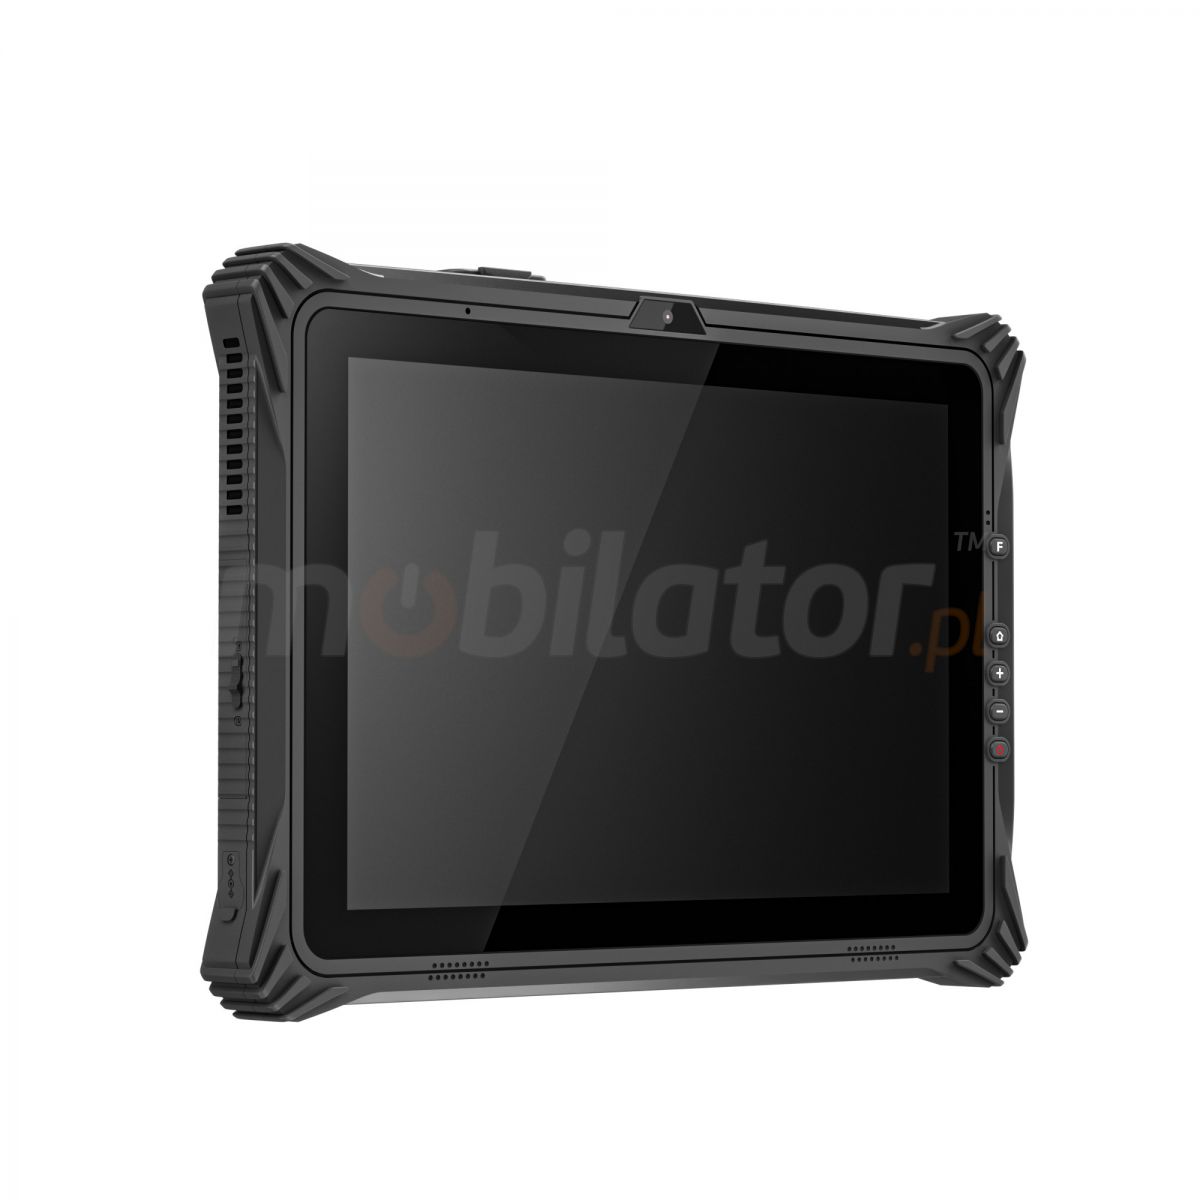 Emdoor I20U v.13 - Odporny na upadki 12.2 calowy tablet z Windows 10 Home, czytnikiem kodw 1D MOTO, NFC, 4G, pamici 8GB RAM i 128GB ROM, Bluetooth 4.2